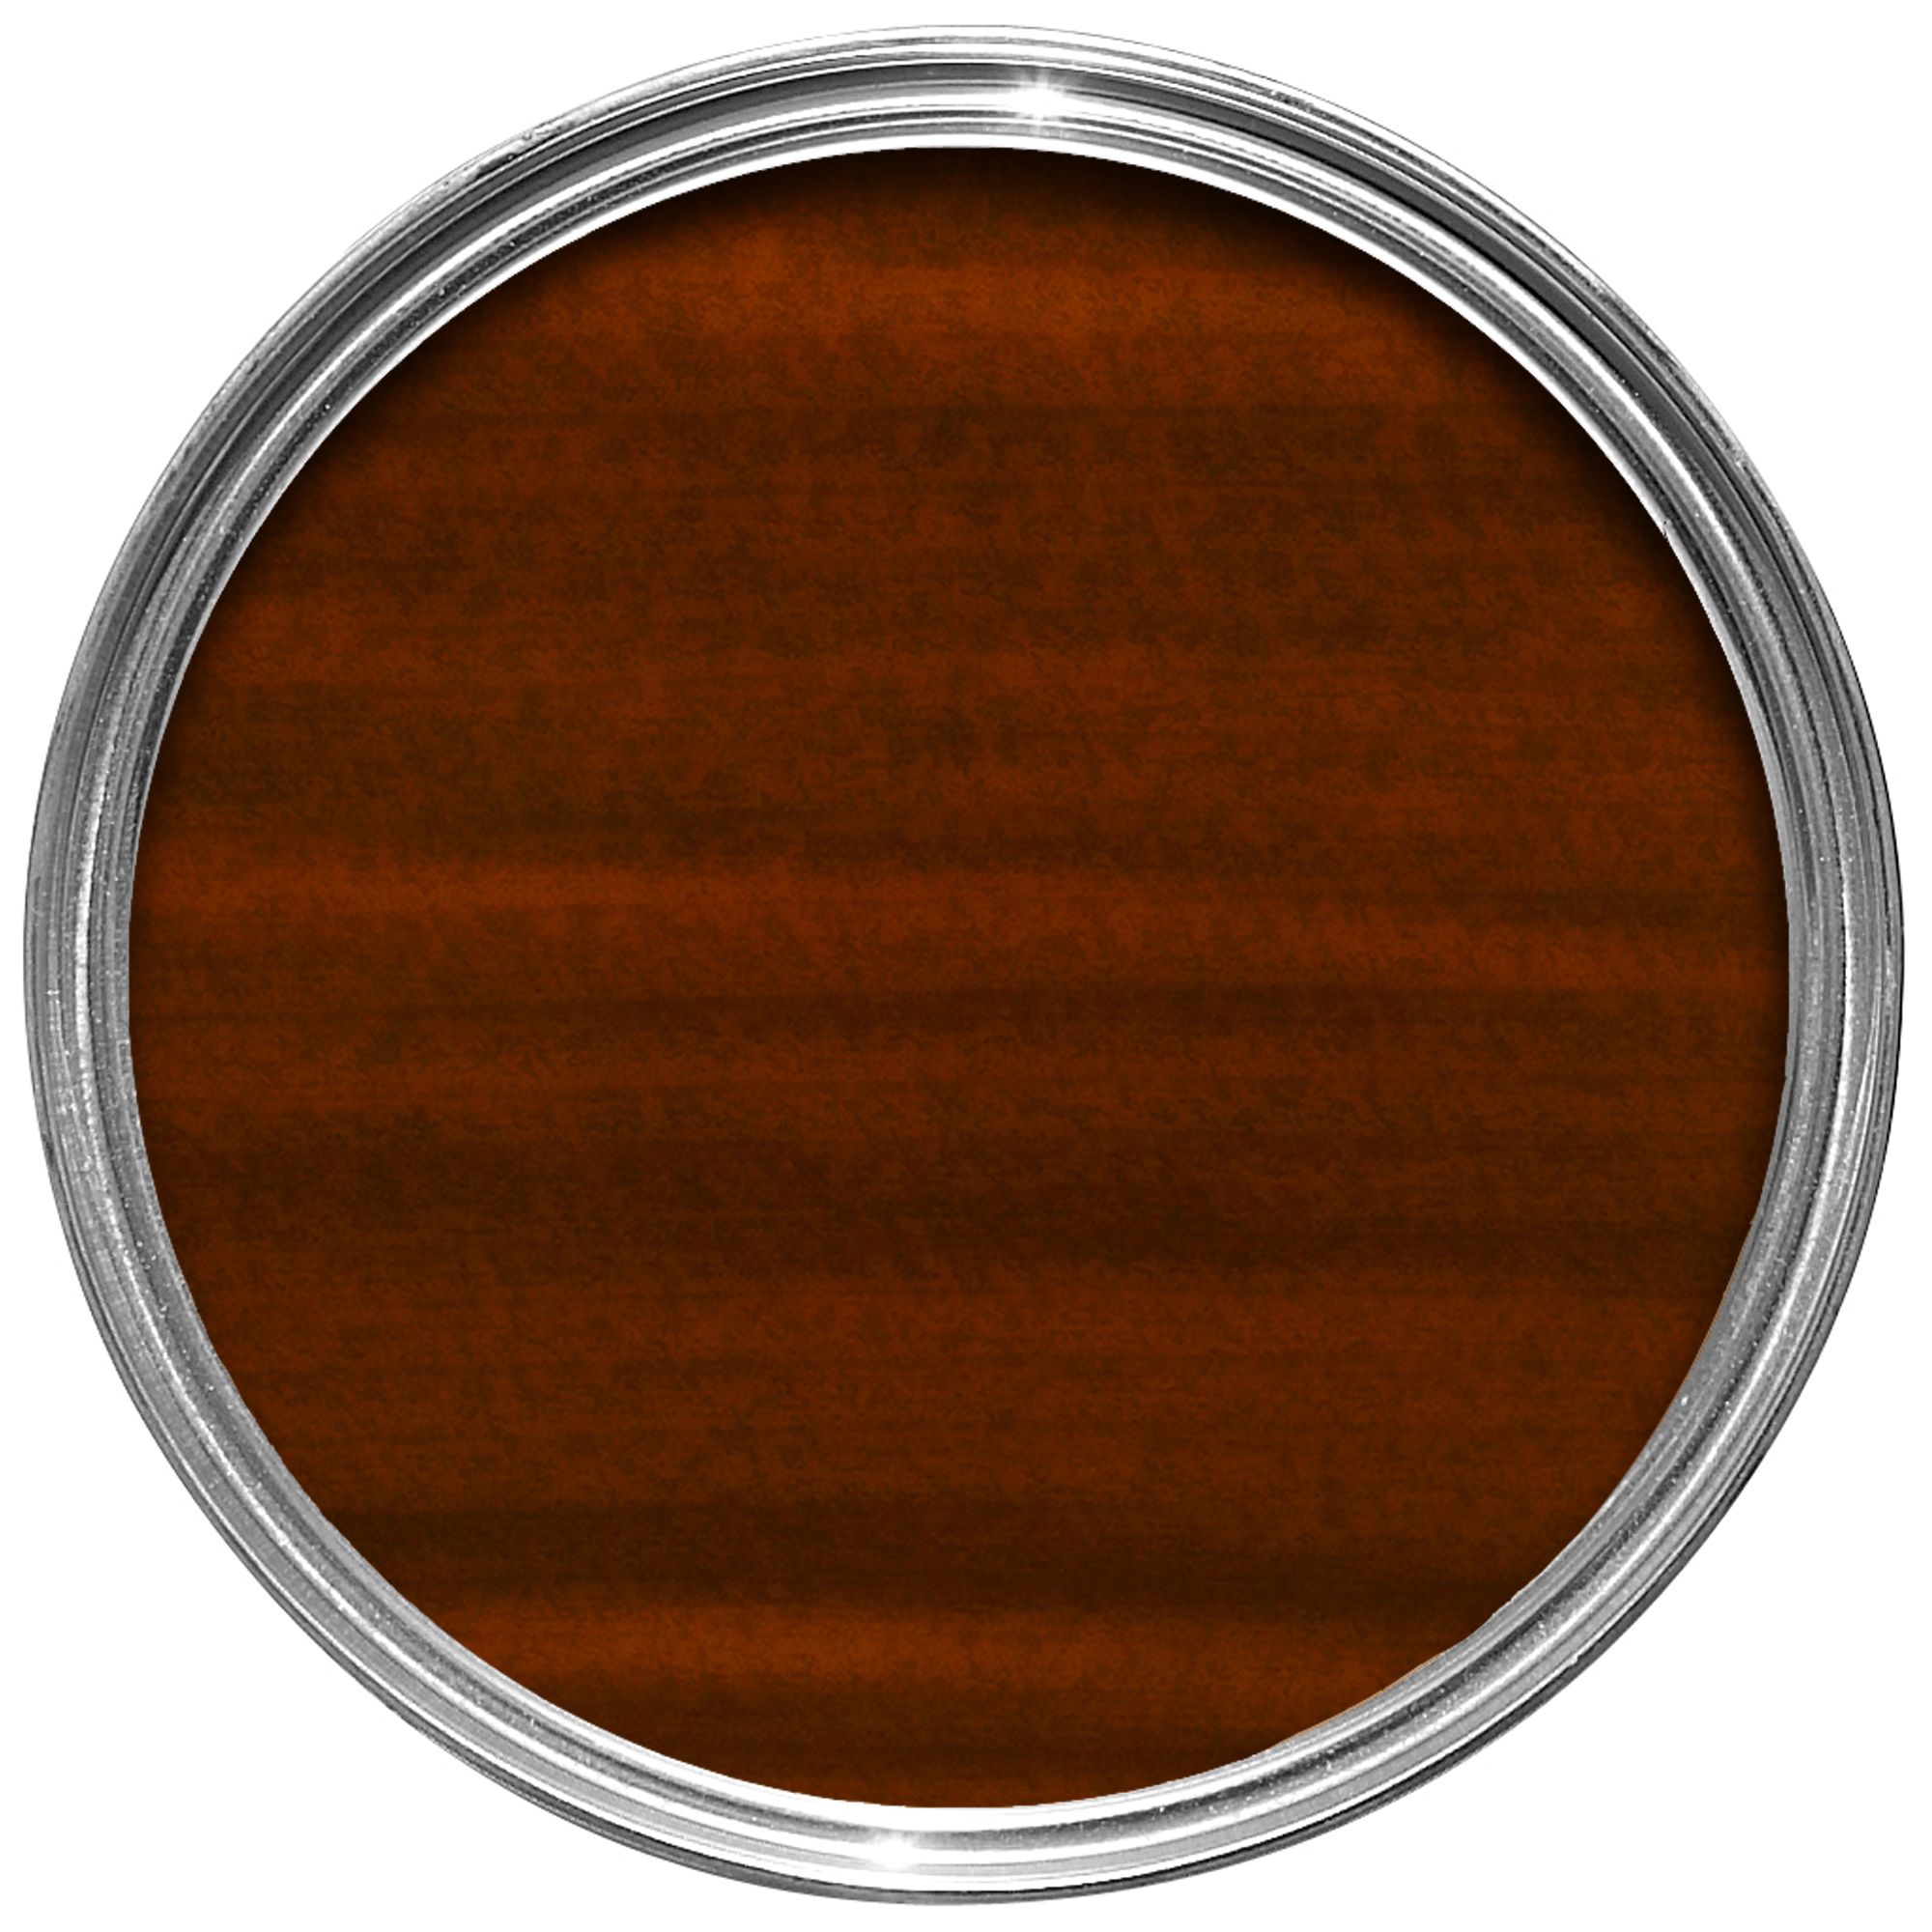 V33 Extreme protection Mahogany Satin Wood stain, 2.5L